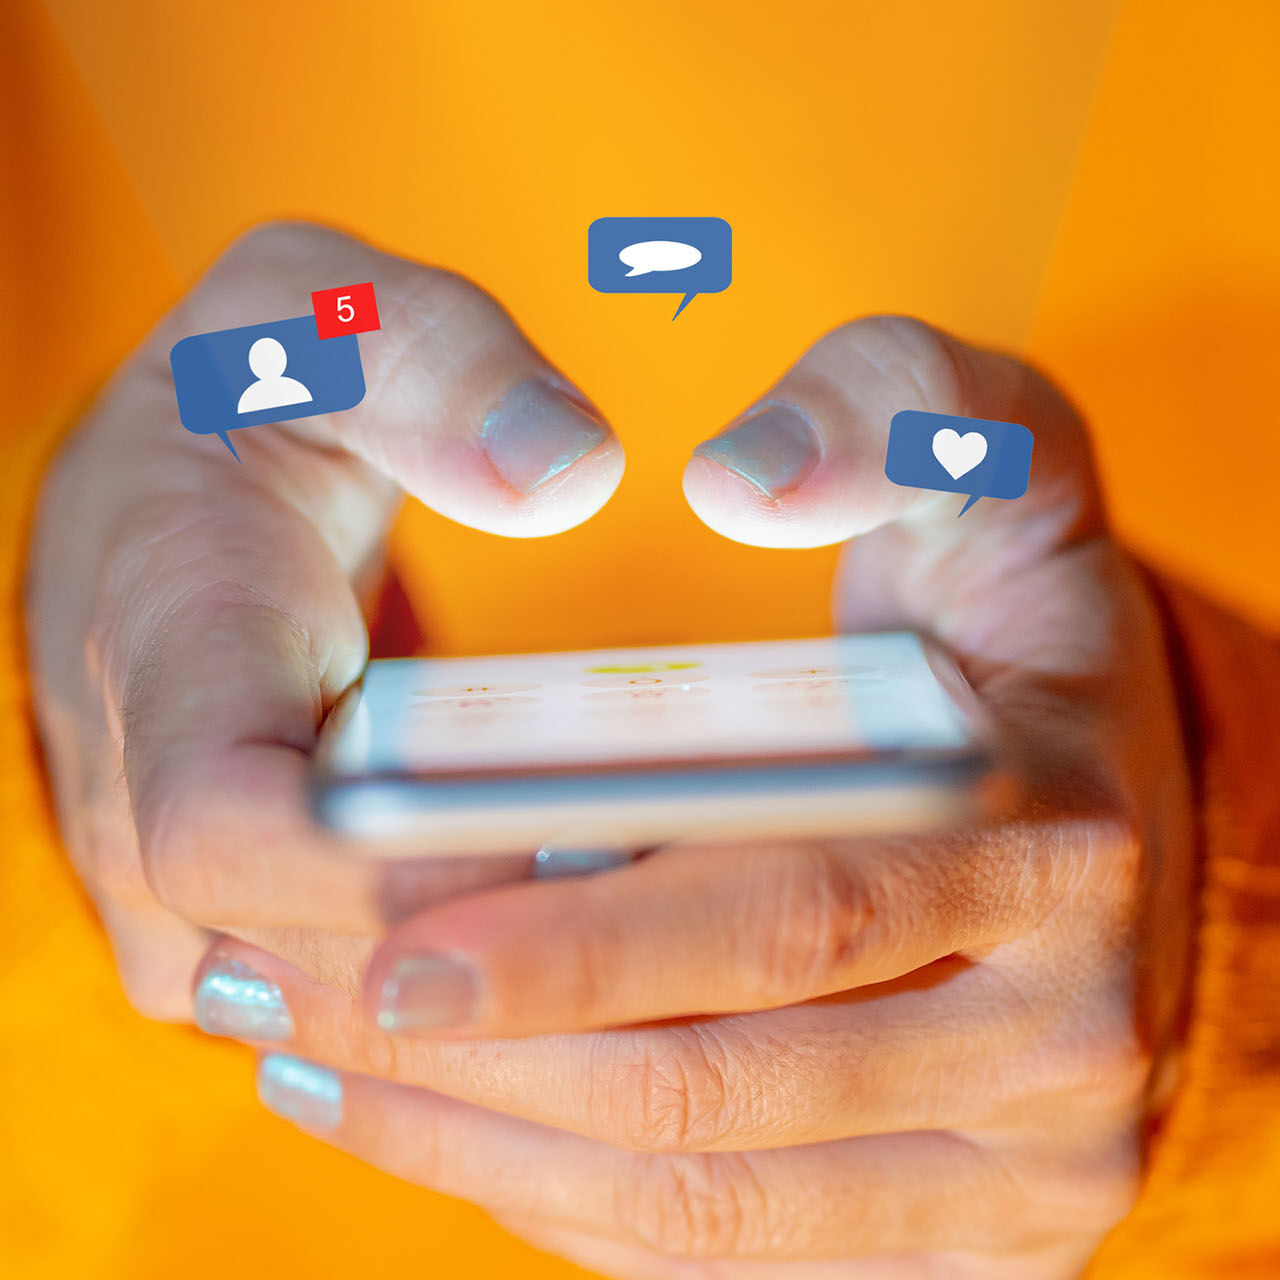 Welke toekomst hebben sociale media voor ons in petto?